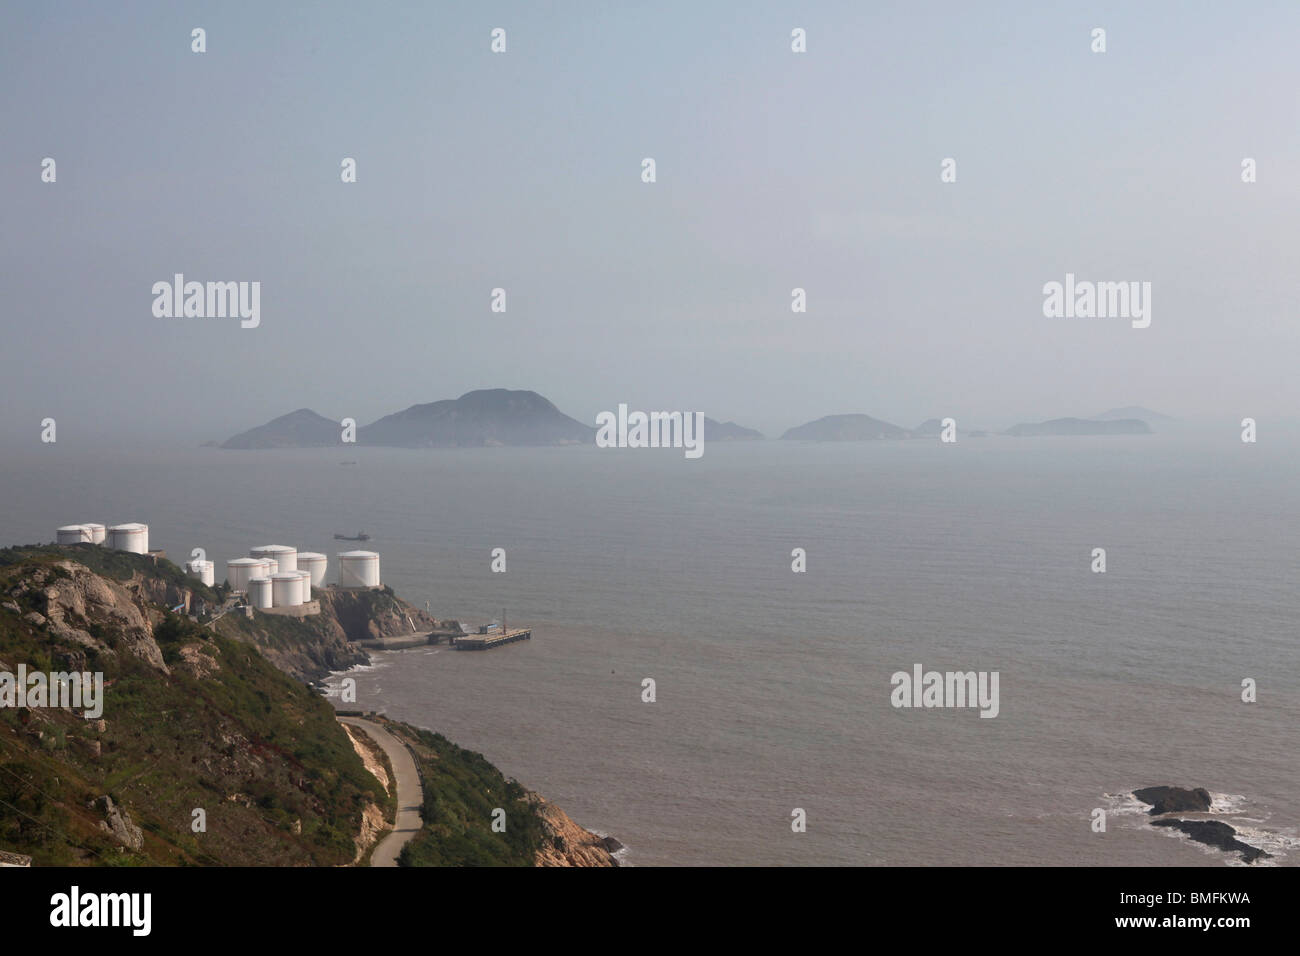 Misty îles au large de la côte de Taizhou, dans la province du Zhejiang, Chine Banque D'Images